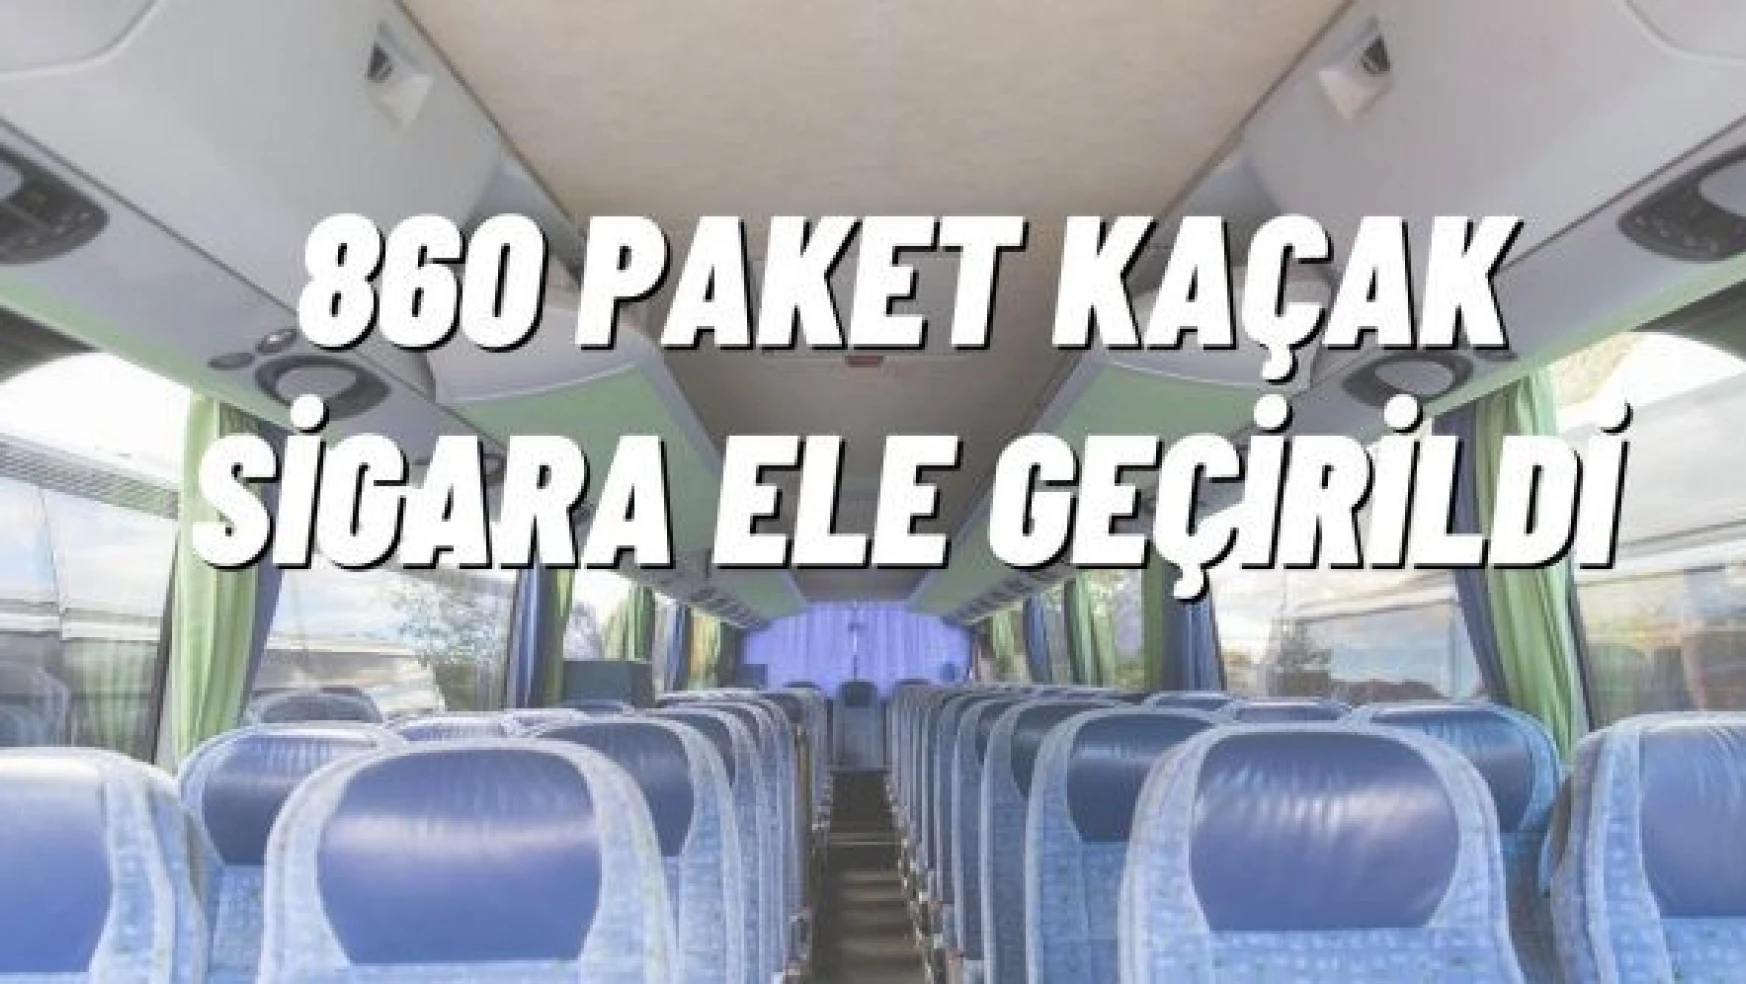 Erzincan'da bir otobüste 860 paket kaçak sigara ele geçirildi